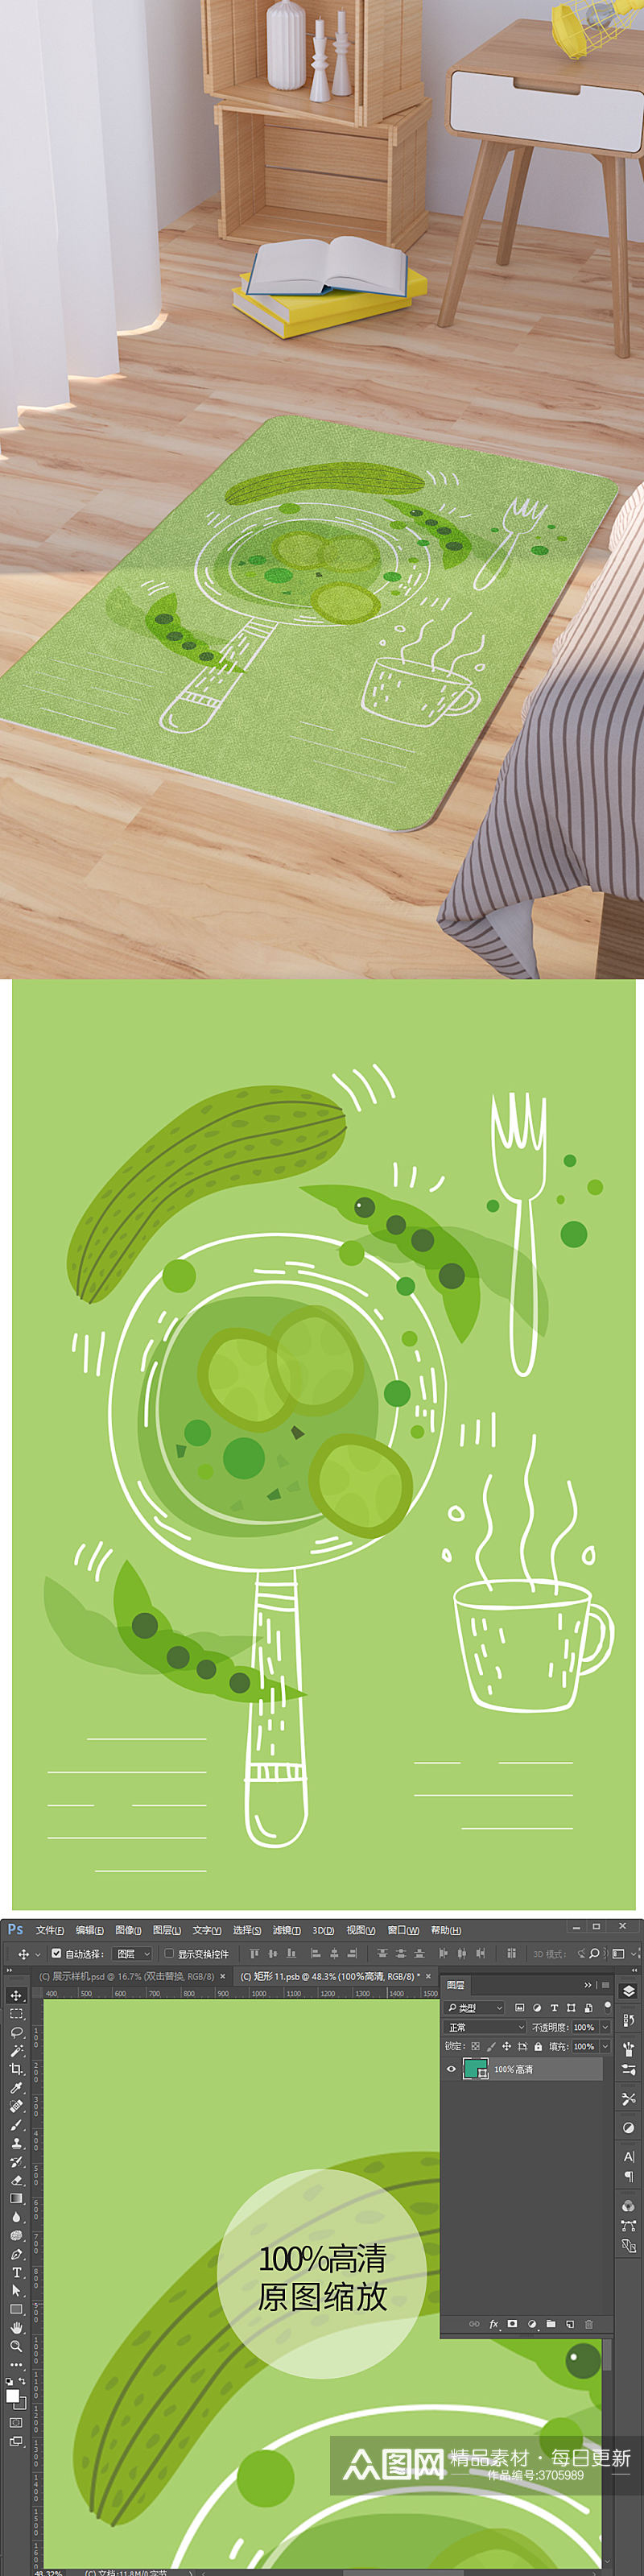 矢量手绘烹饪蔬菜卡通可爱脚垫地毯图案素材